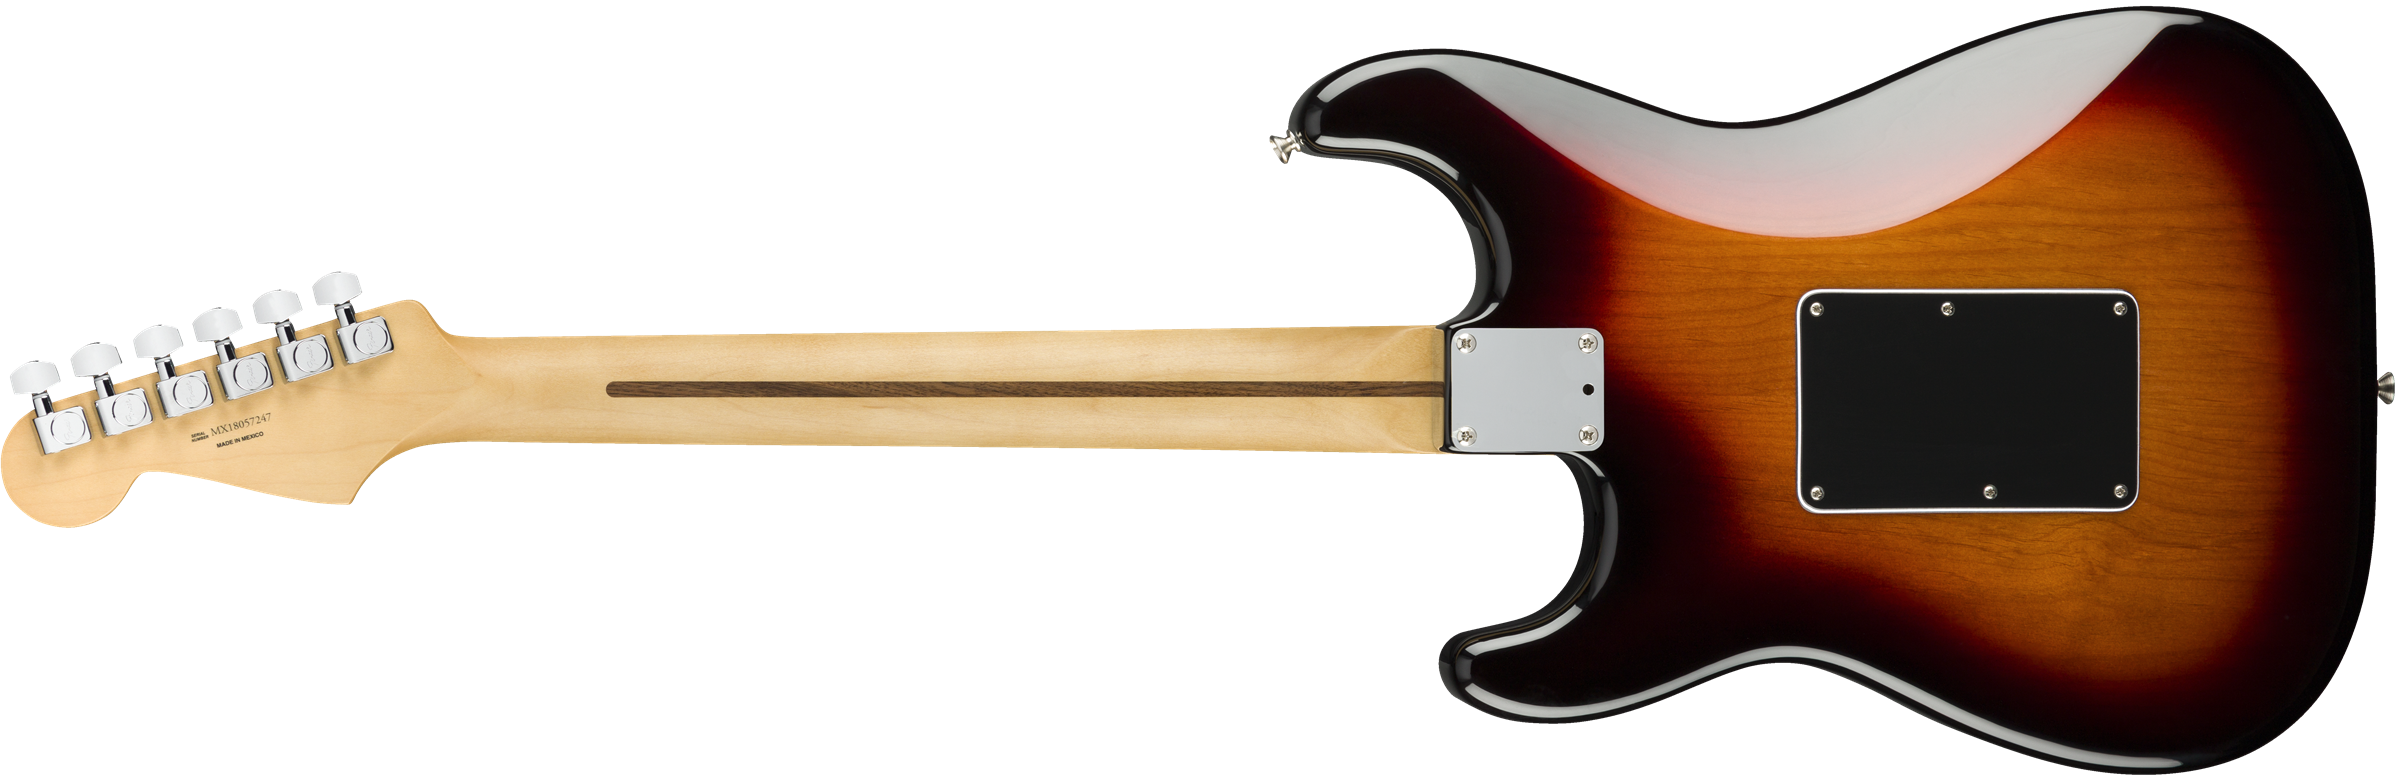 Fender Strat Player Floyd Rose Mex Hss Fr Pf - 3-color Sunburst - E-Gitarre in Str-Form - Variation 1